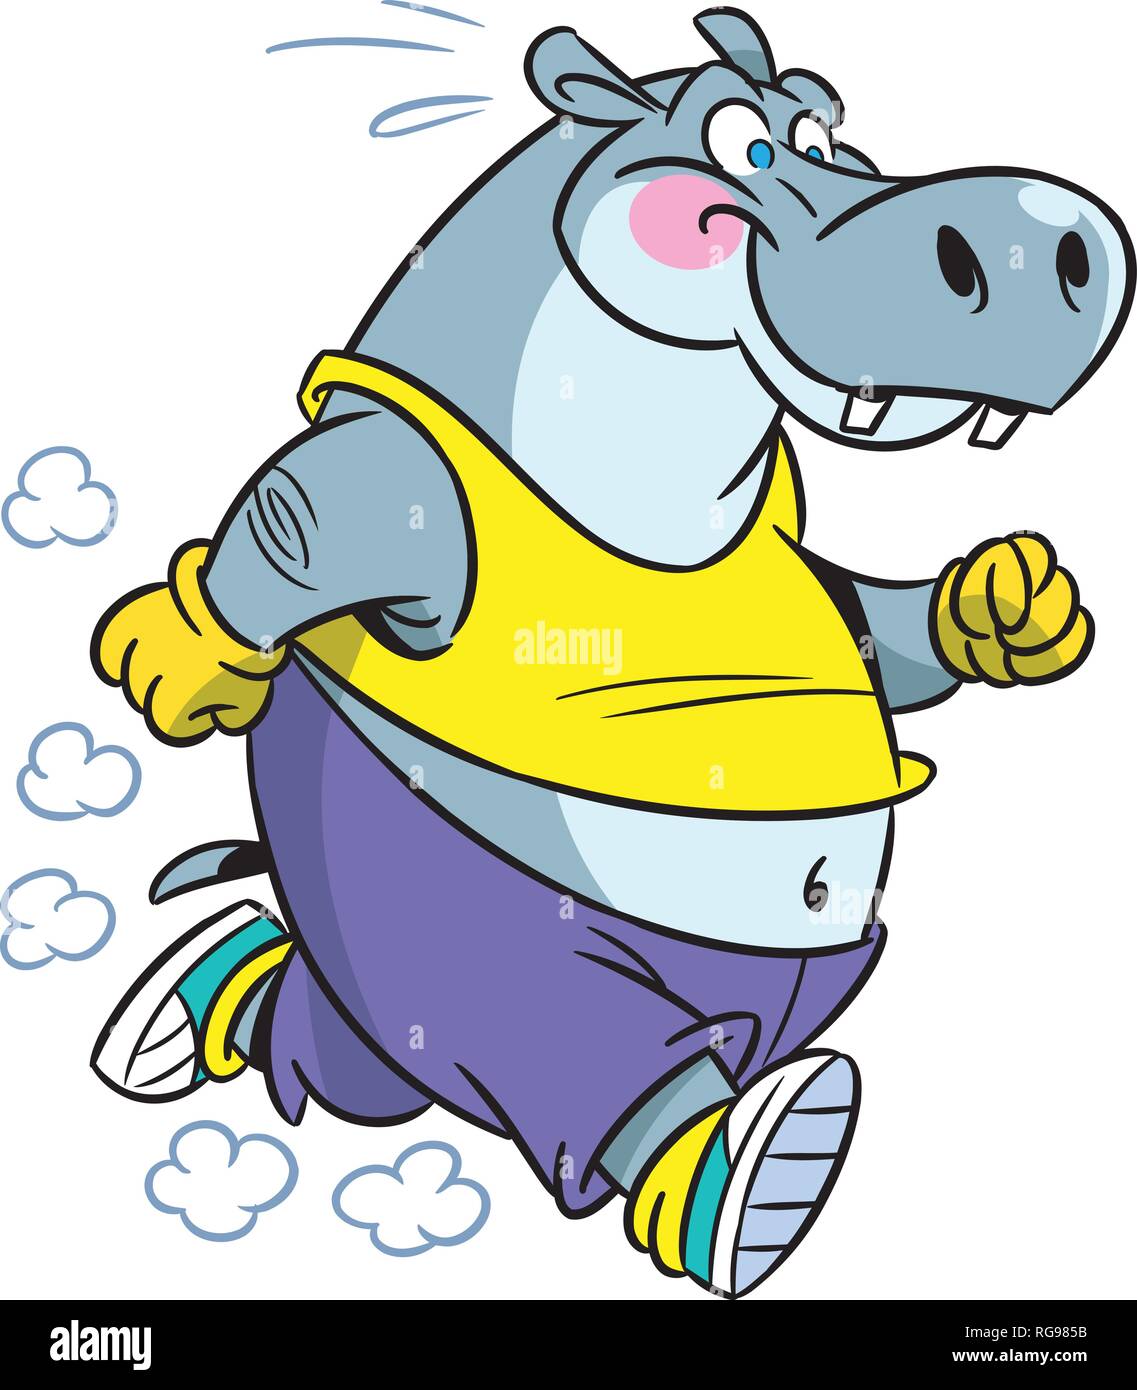 L'illustration montre l'hippopotame, qui traite l'exécution de sports. En fait l'illustration cartoon style isolé sur fond blanc. Illustration de Vecteur